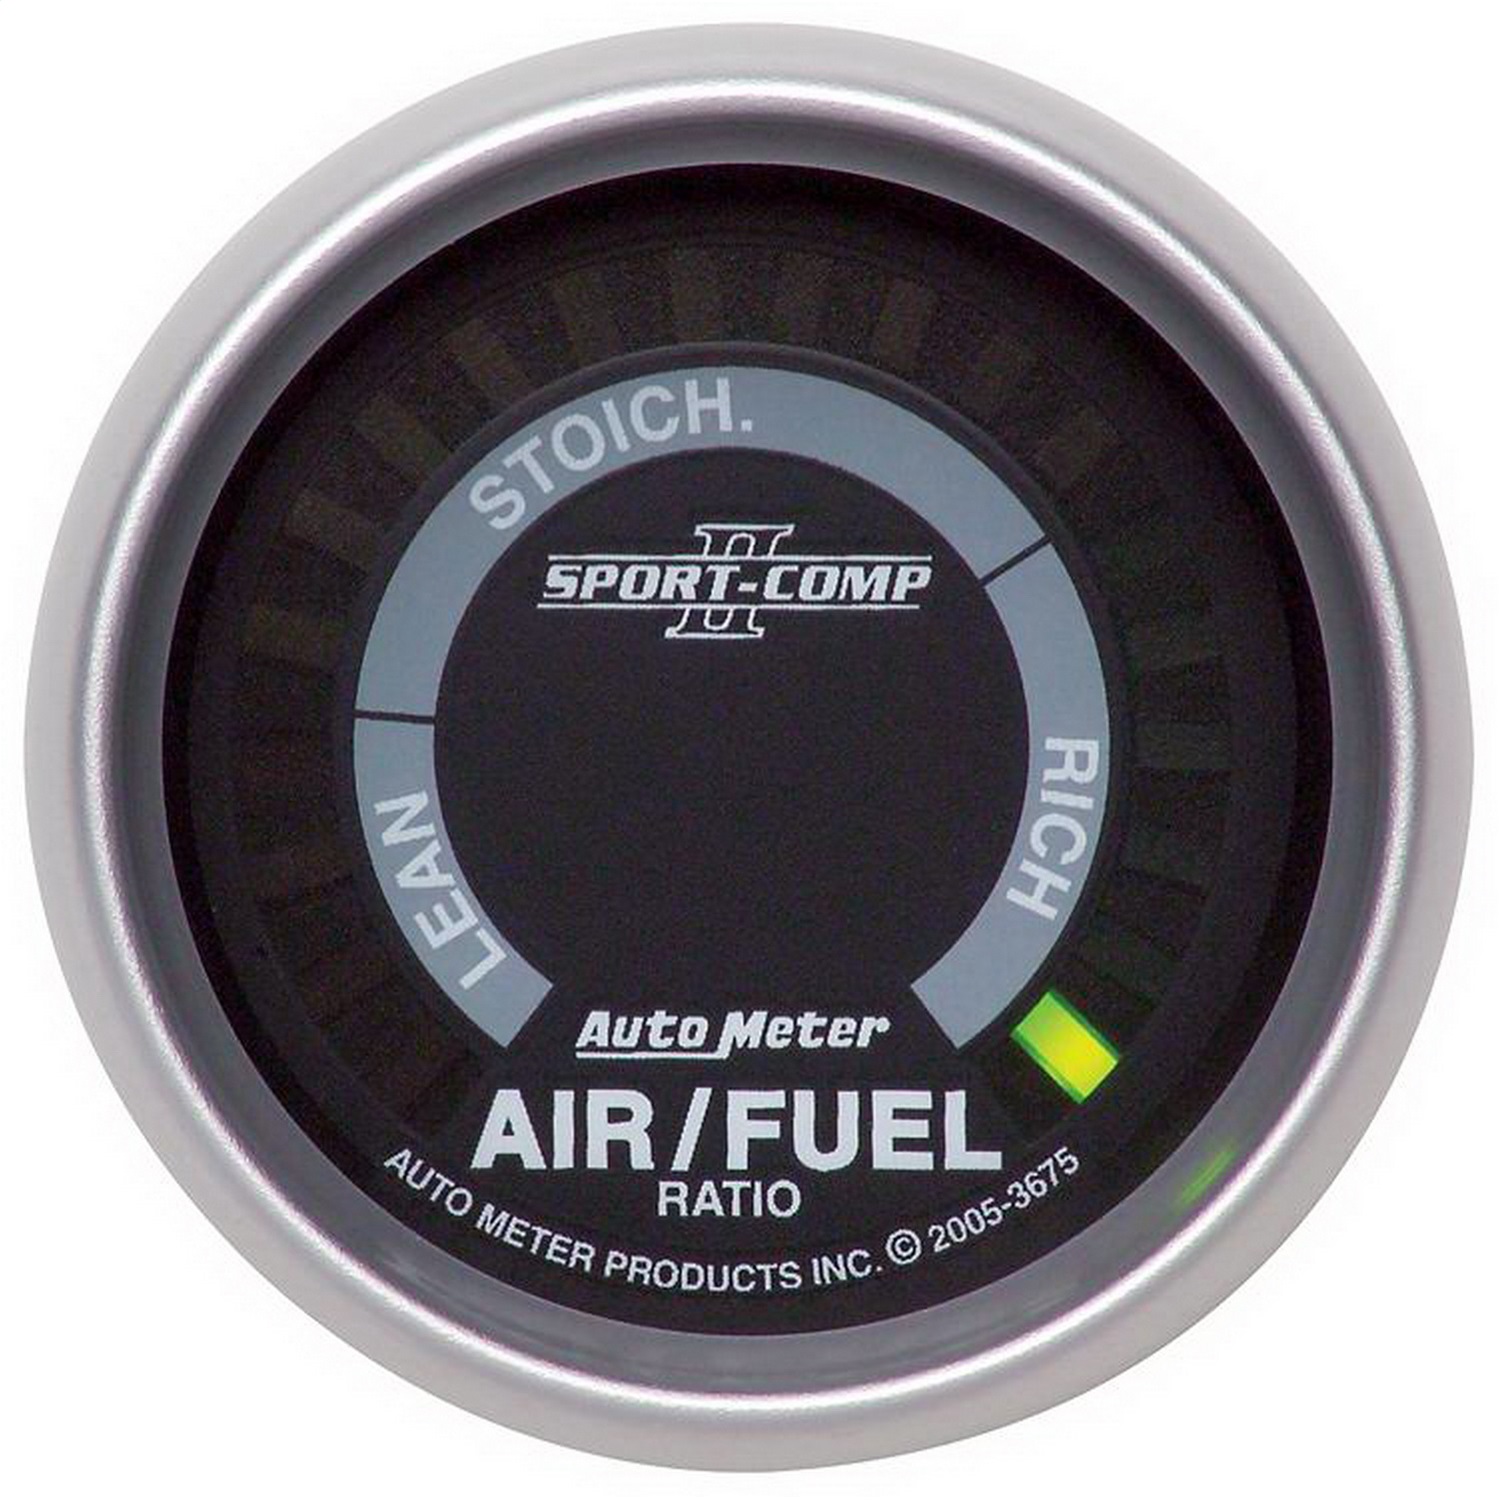 Auto Meter Auto Meter 3675 Sport-Comp II; Electric Air Fuel Ratio Gauge